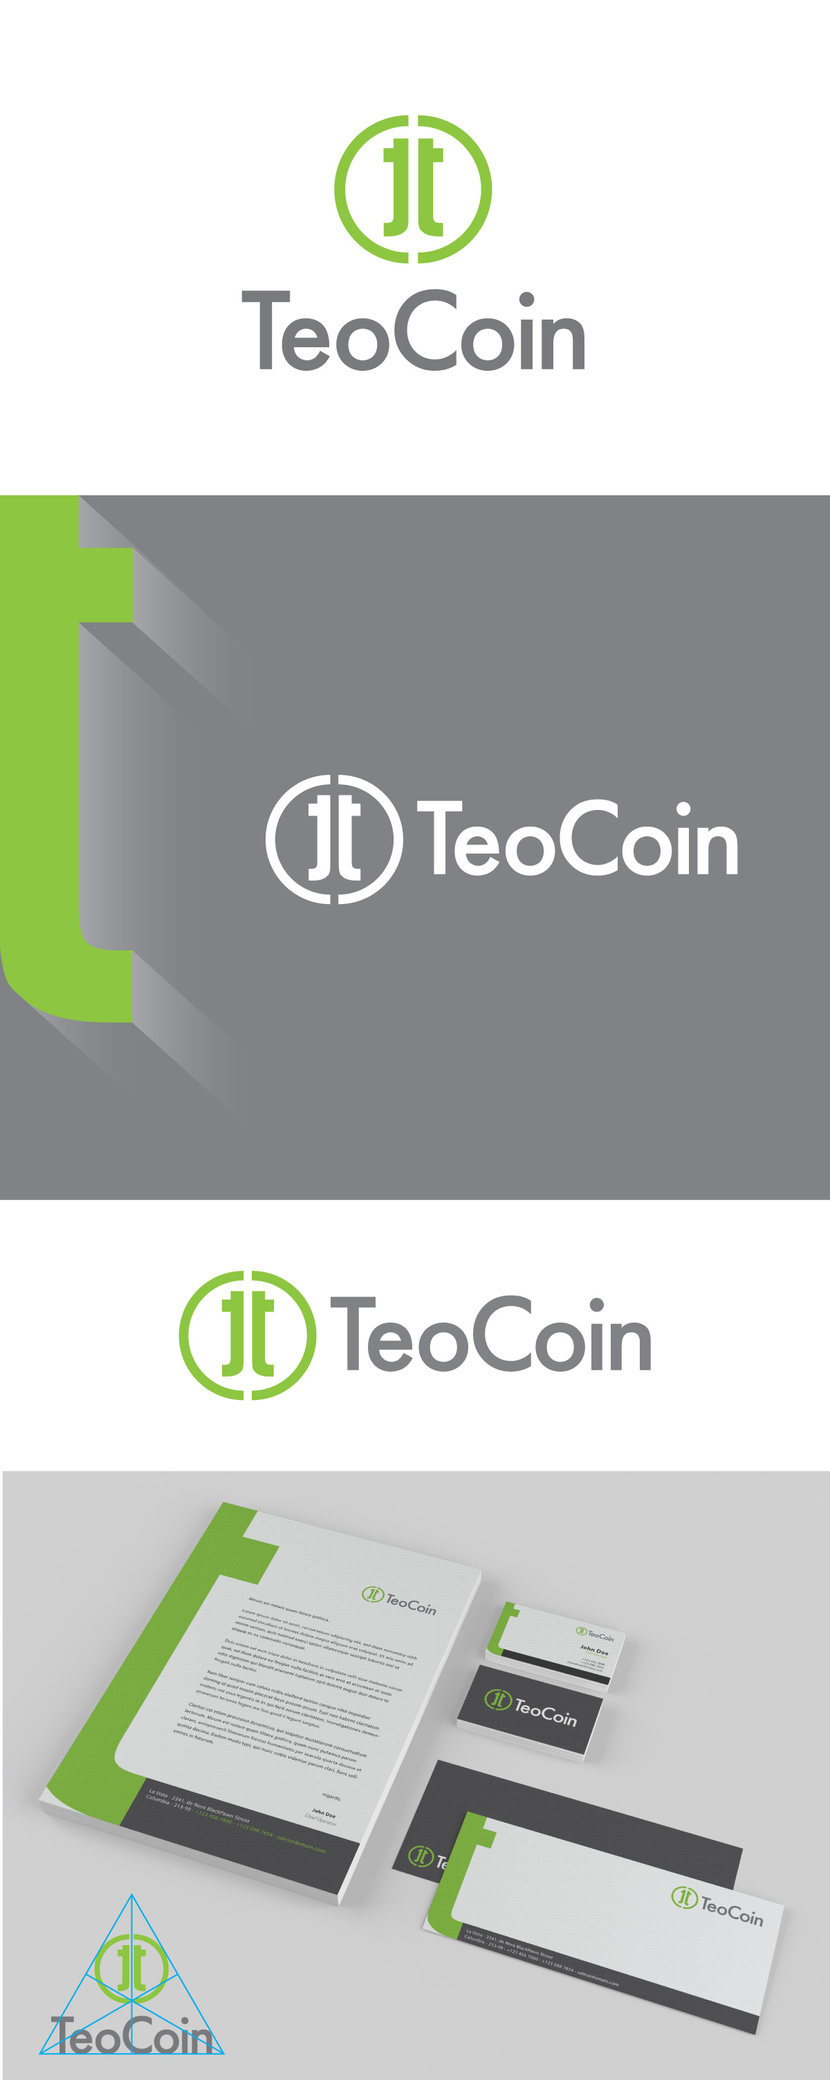 5 - Создание фирменного стиля для новой криптовалюты TeoCoin